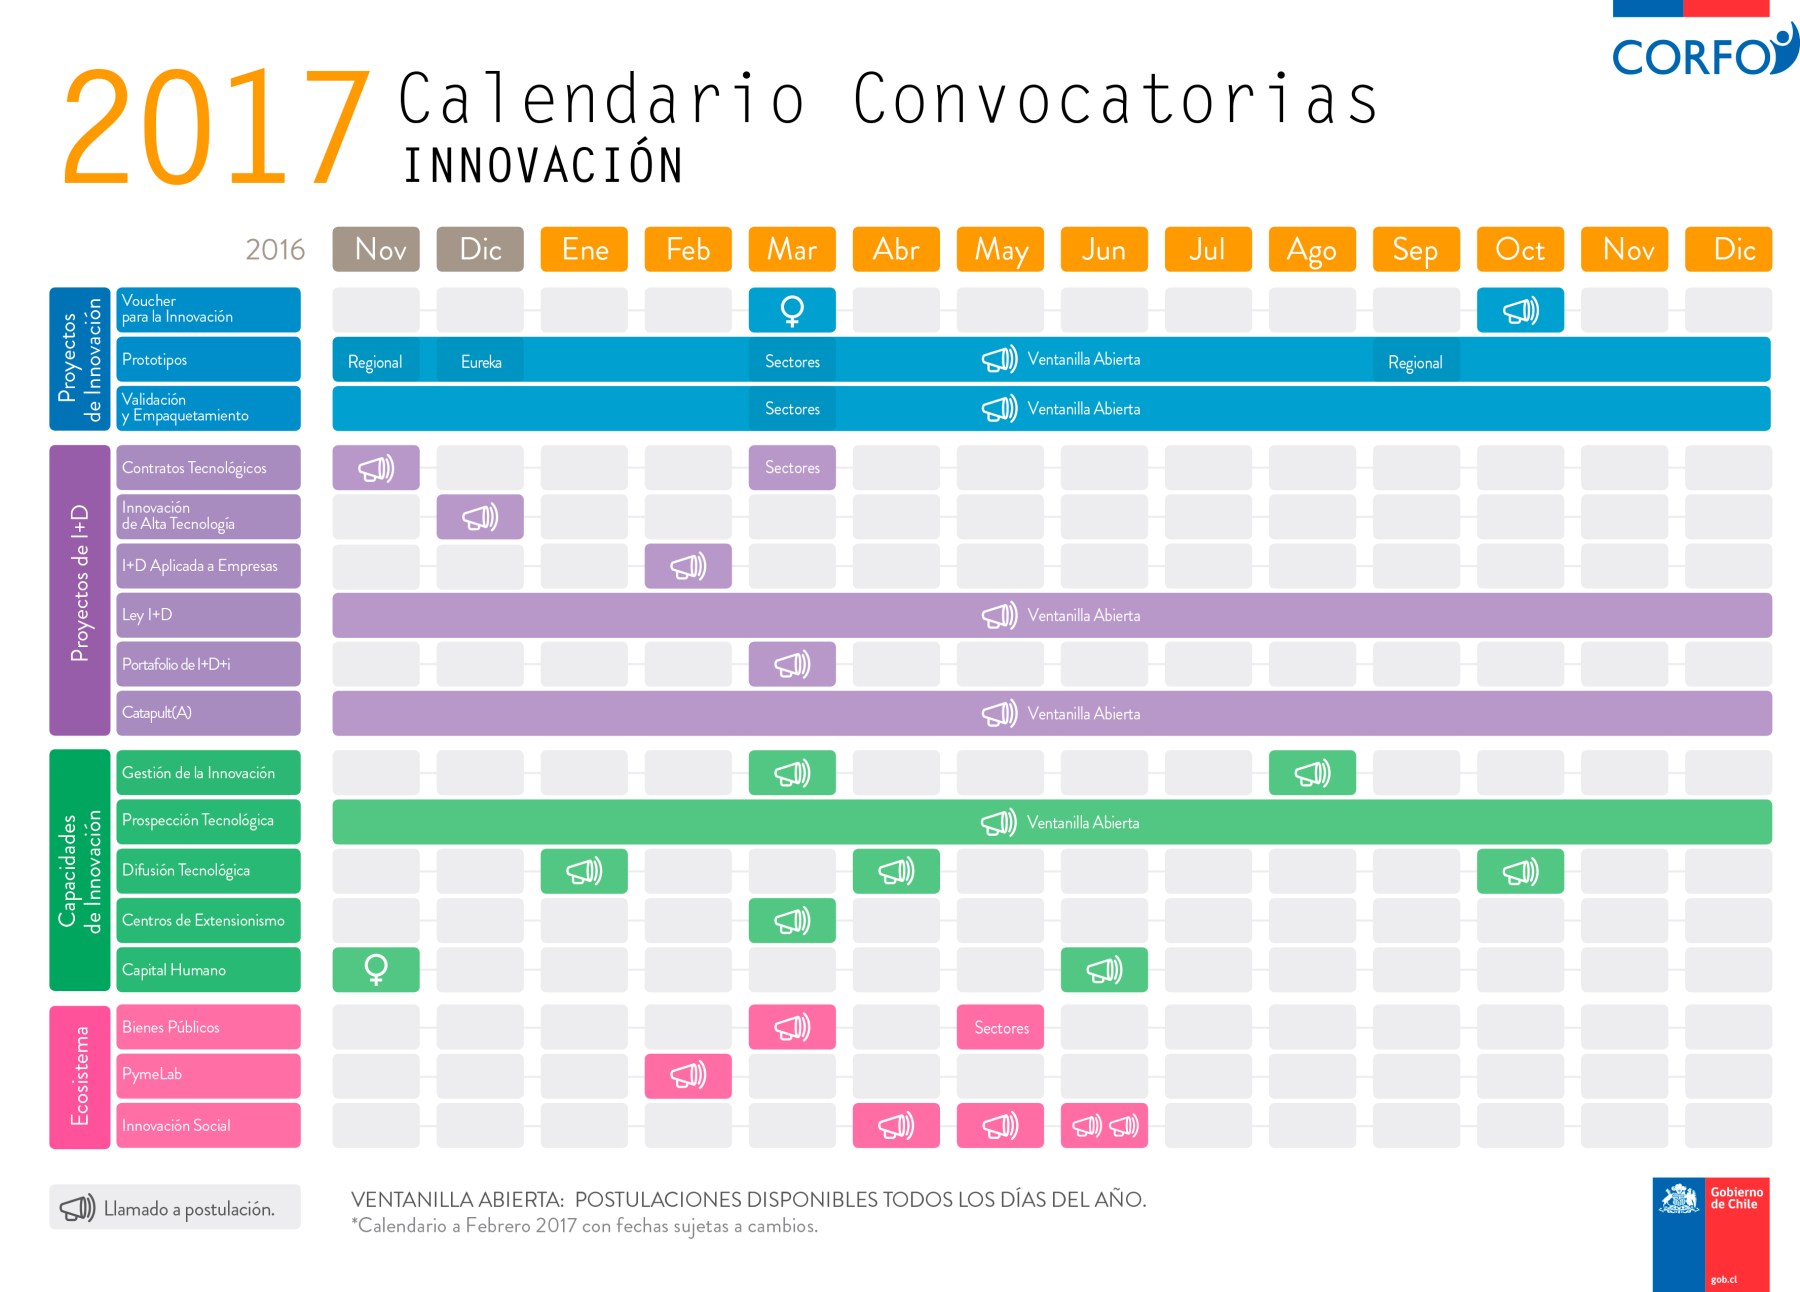 Calendario Convocatorias Corfo Innovación 2017 (2da Parte)